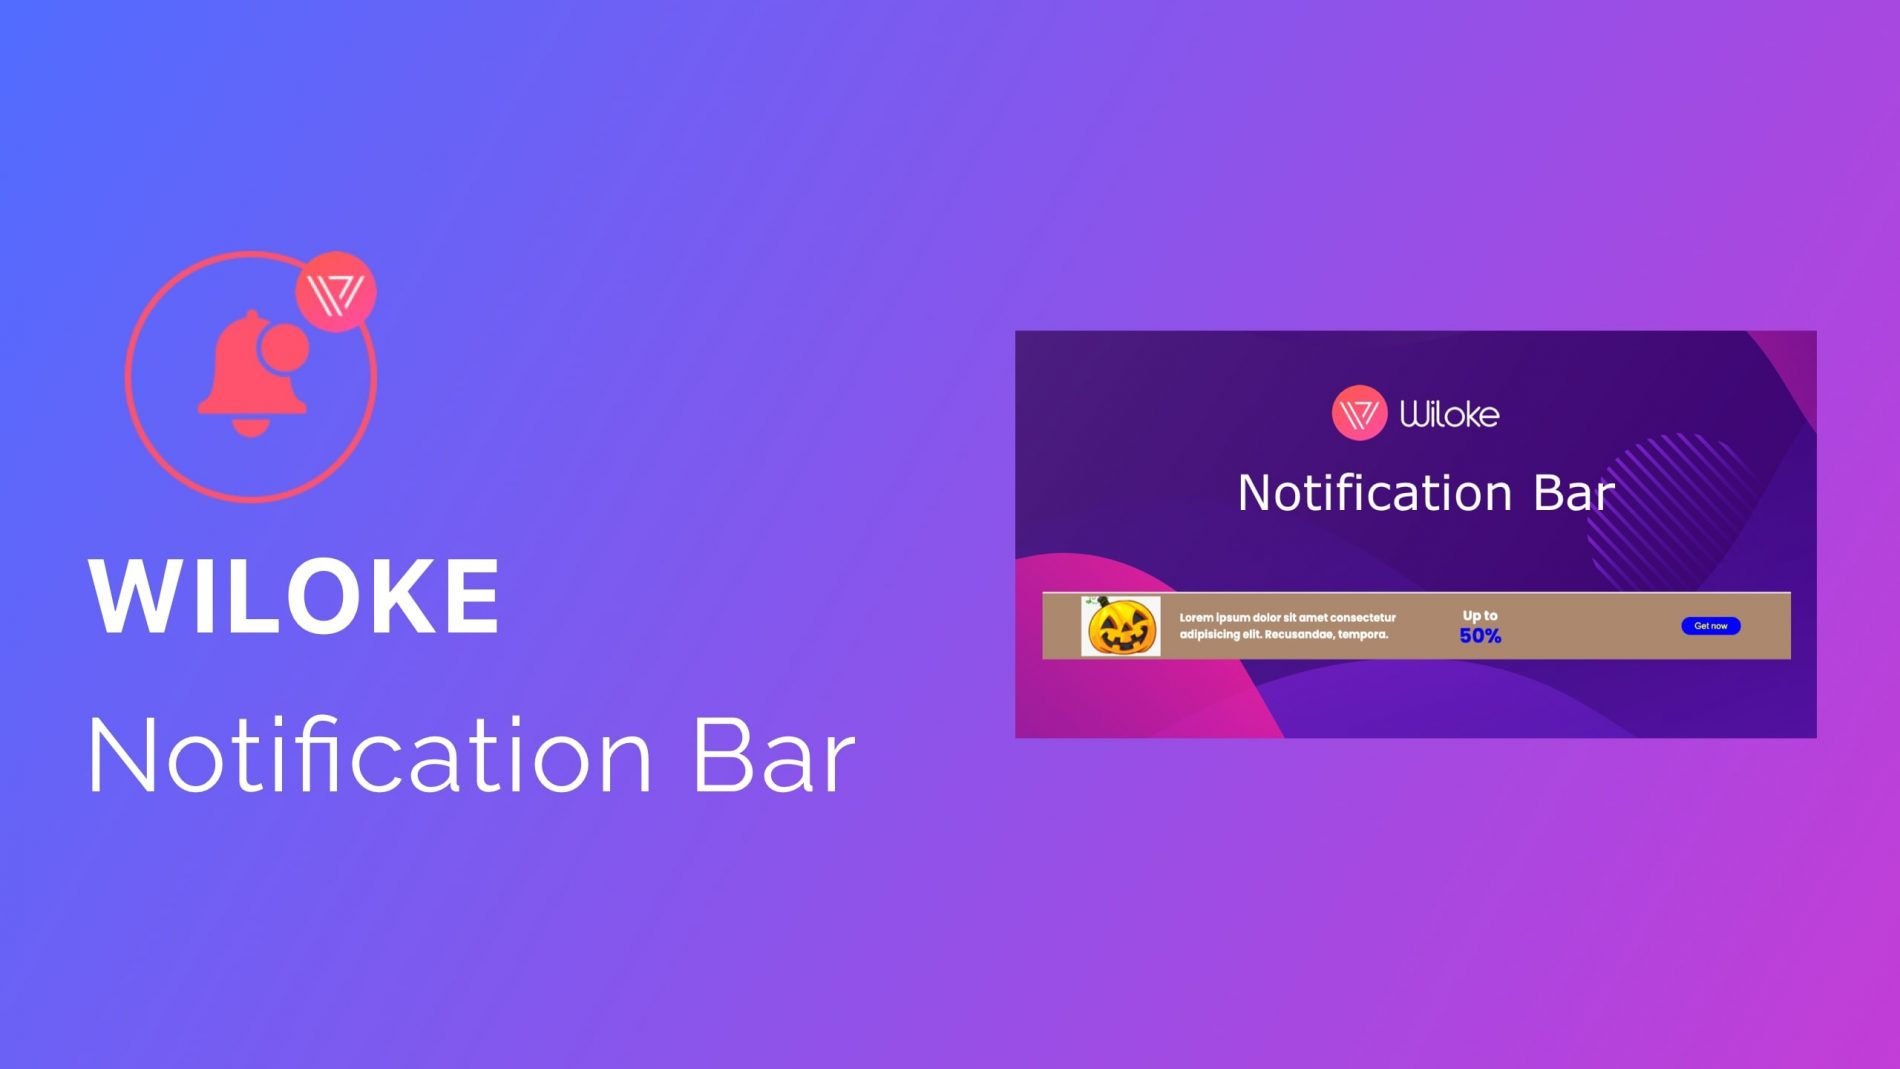 Wiloke Notification Bar.jpg